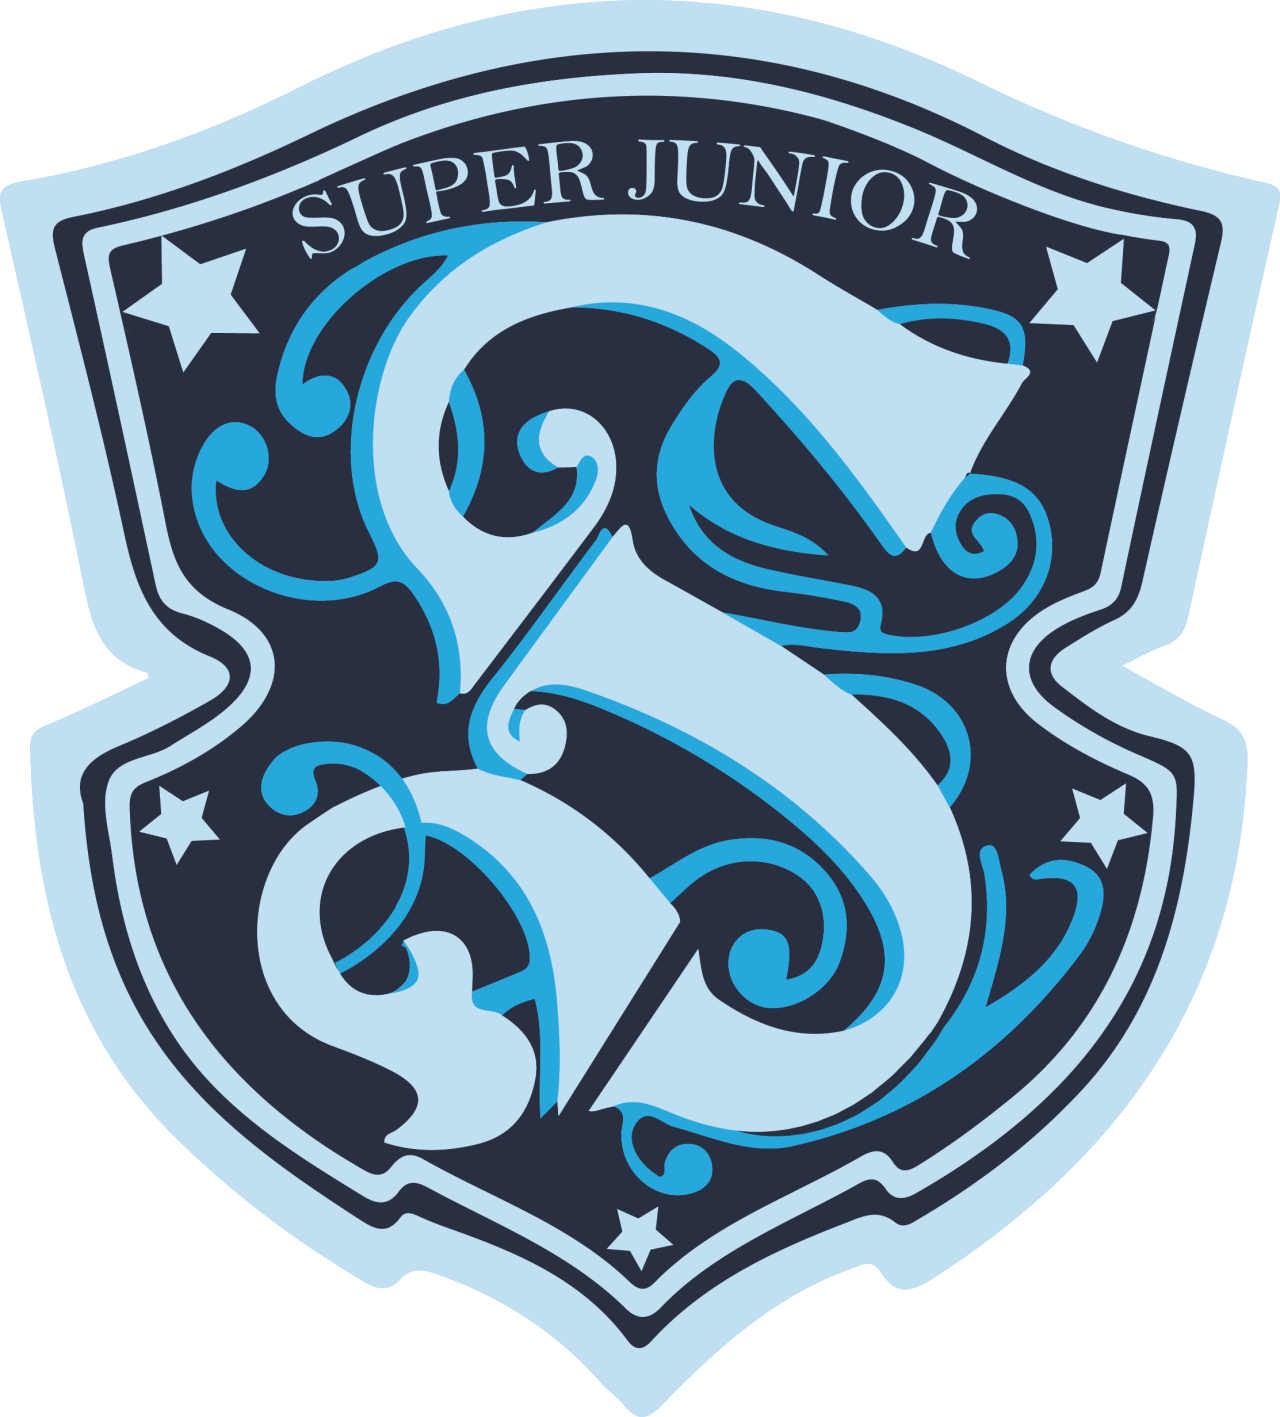 Super Junior | K-pop Wikia | FANDOM powered by Wikia